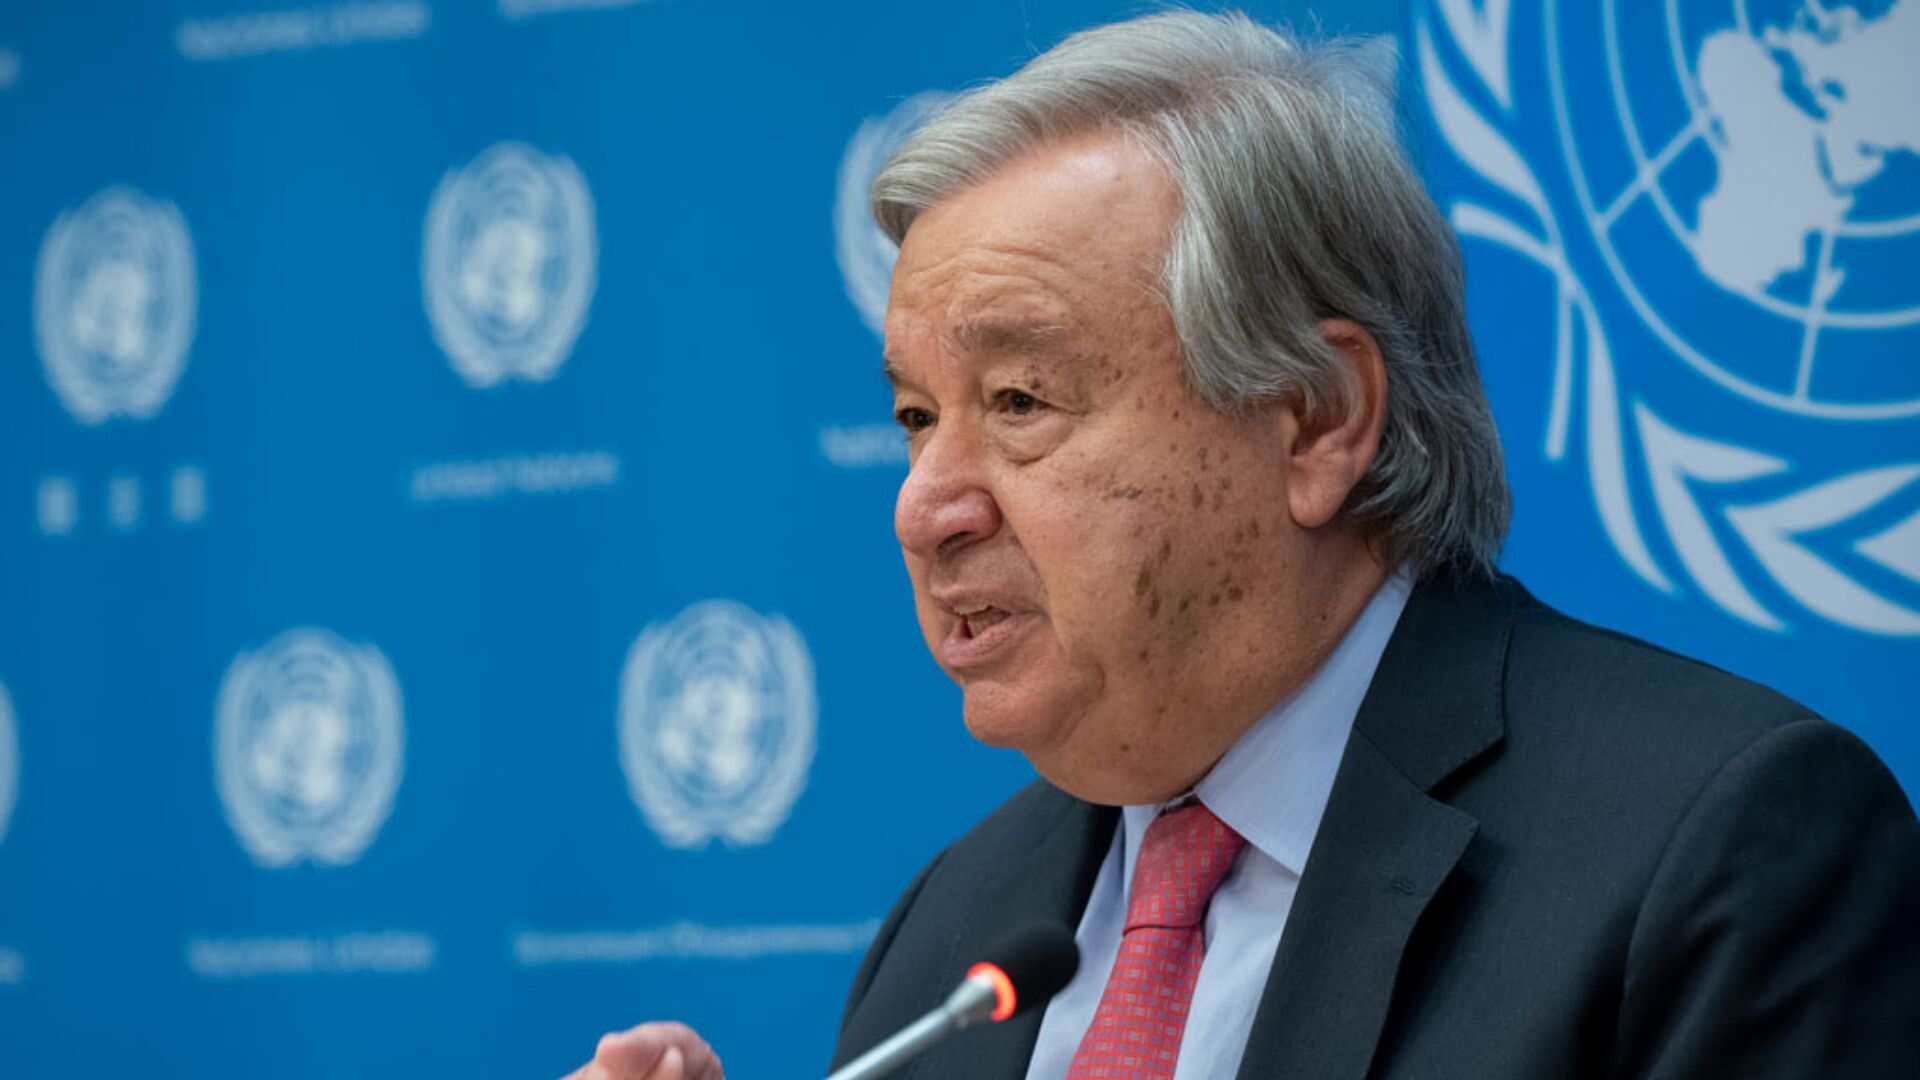 UN Report Reveals Most Global Development Goals in Danger of Missing 2030 Deadline